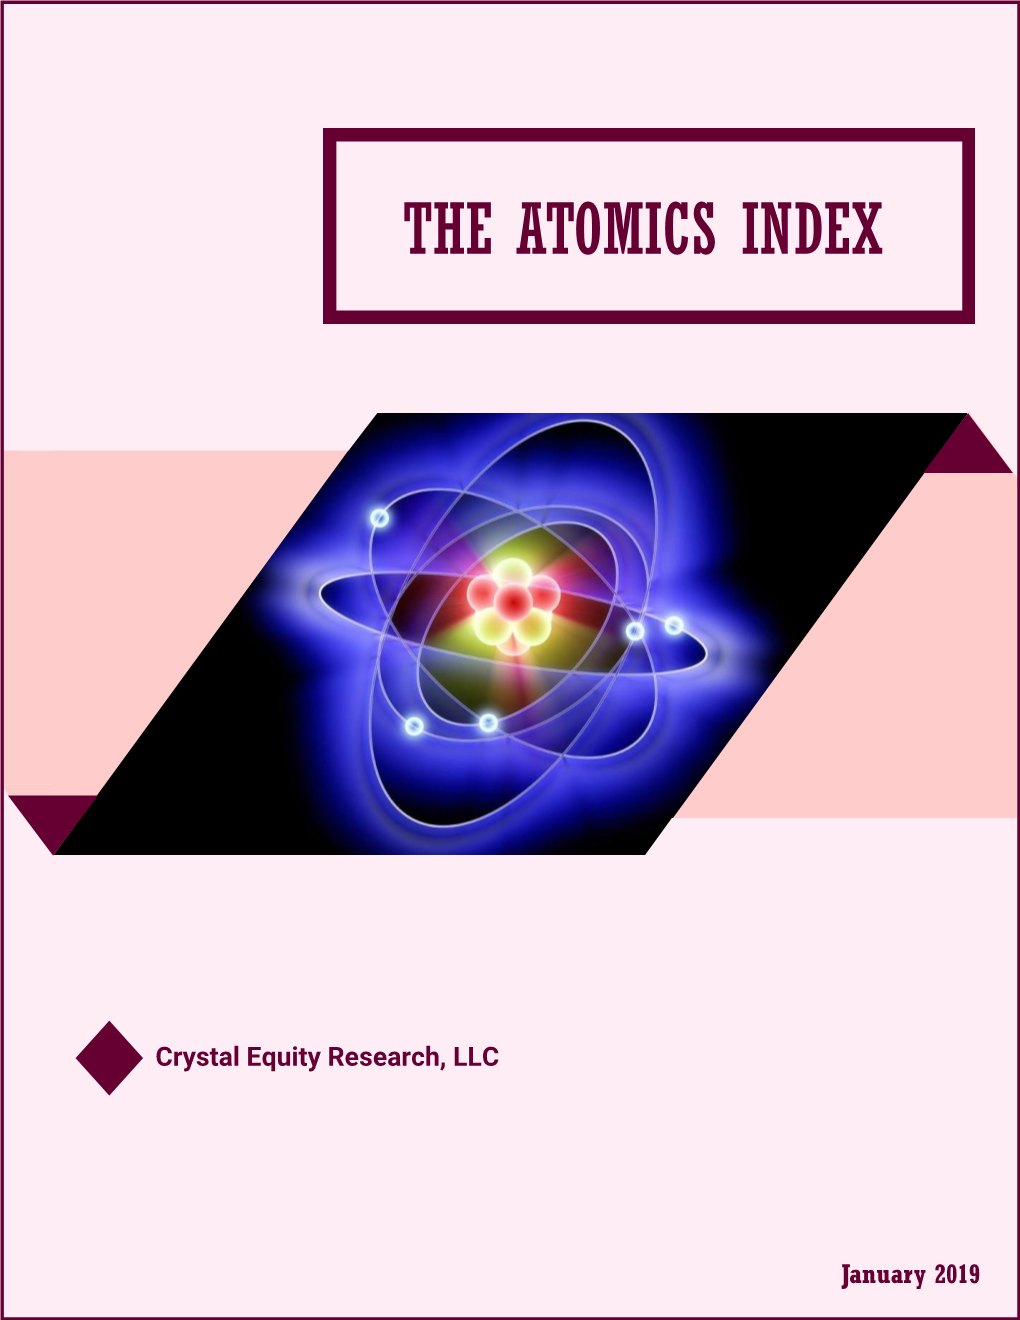 The Atomics Index